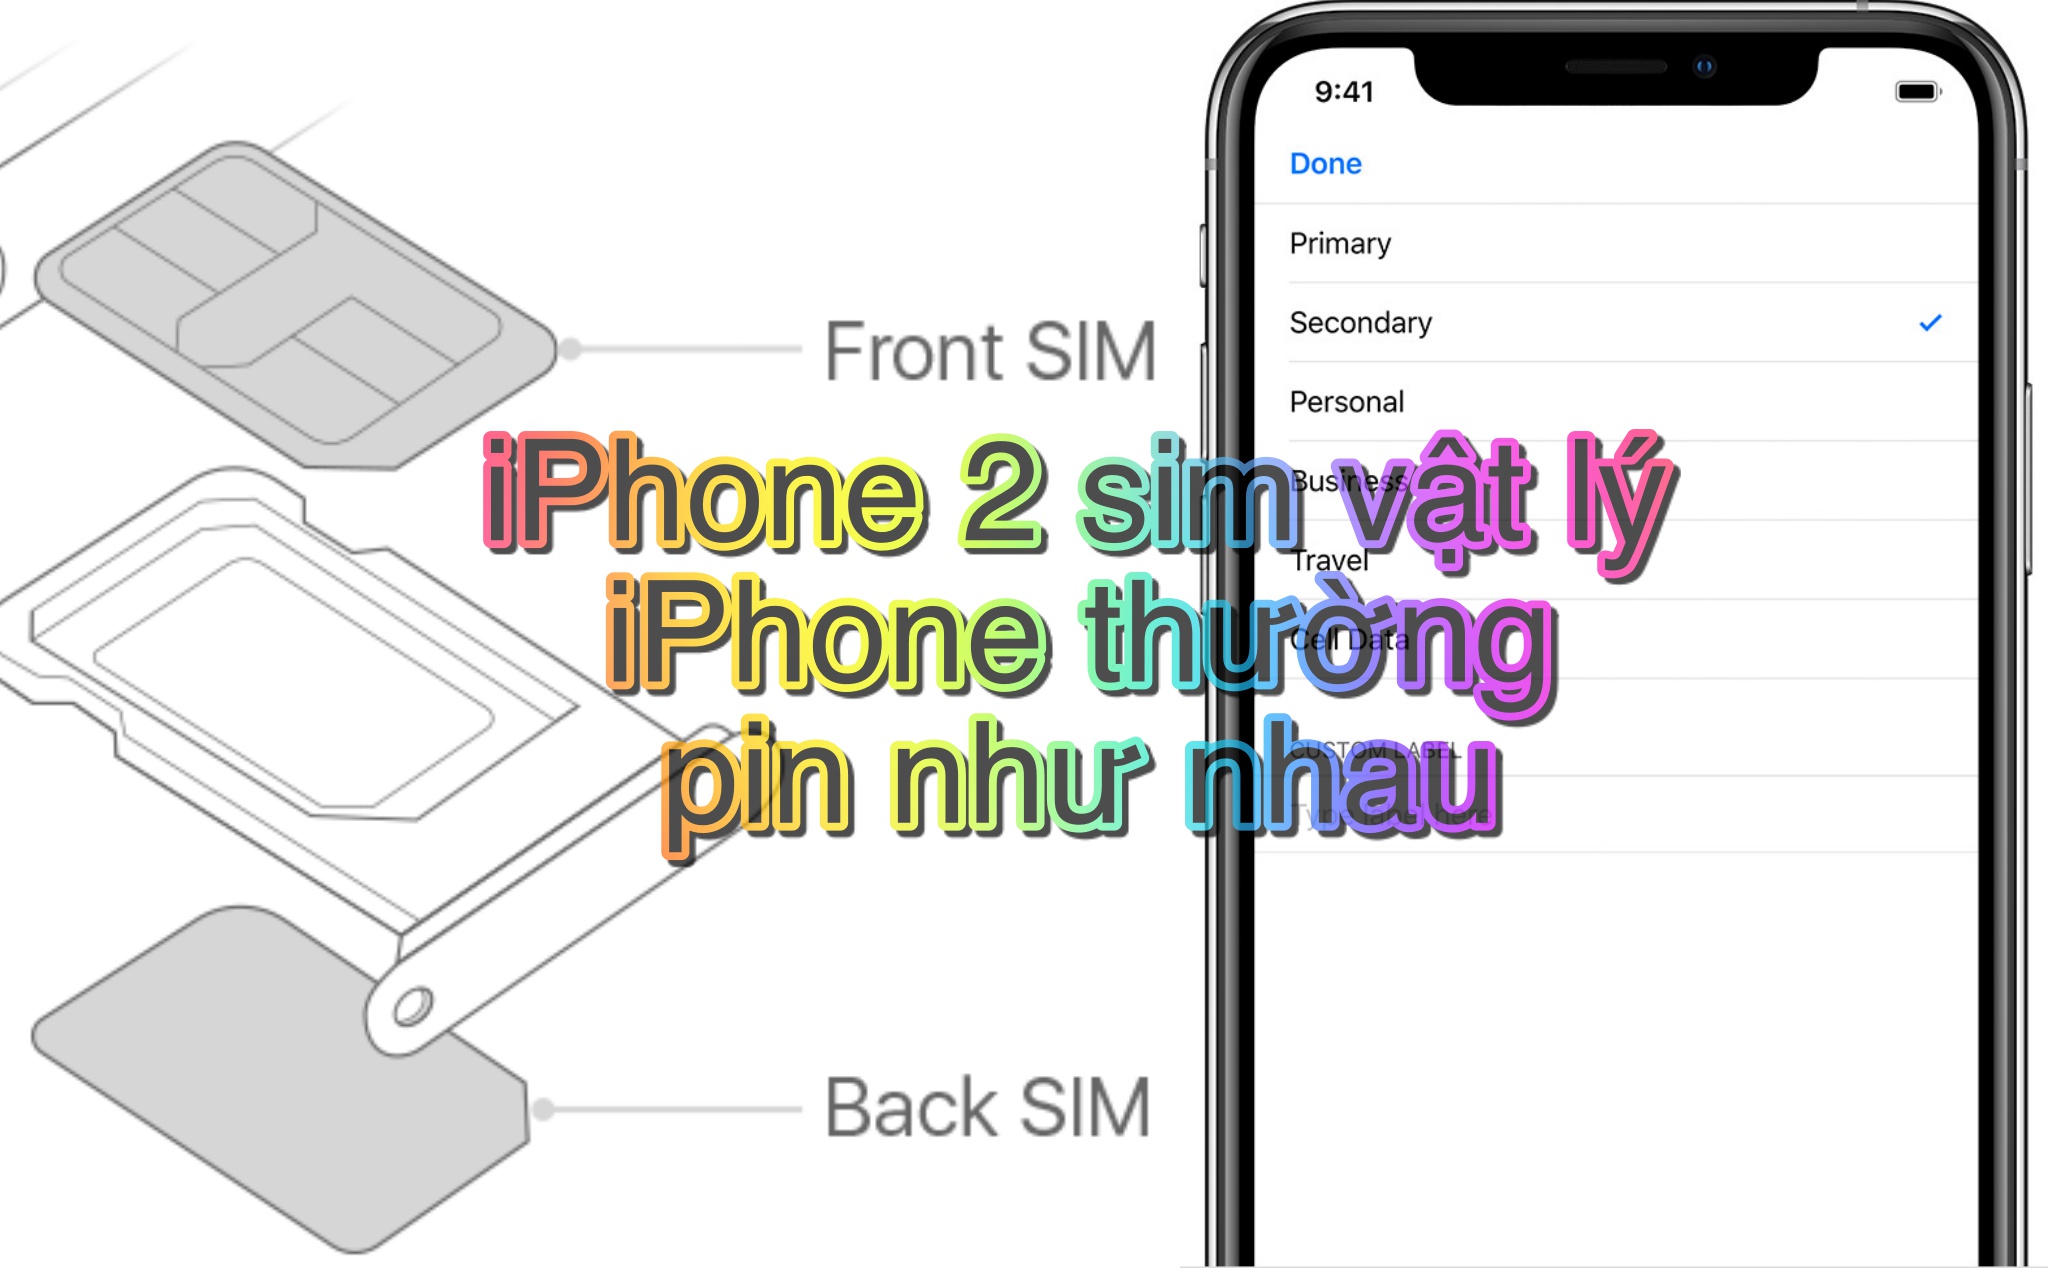 Thử nghiệm] Liệu iPhone XS Max bản 2 SIM vật lý khi dùng có tốn pin hơn bản  1 SIM vật lý?